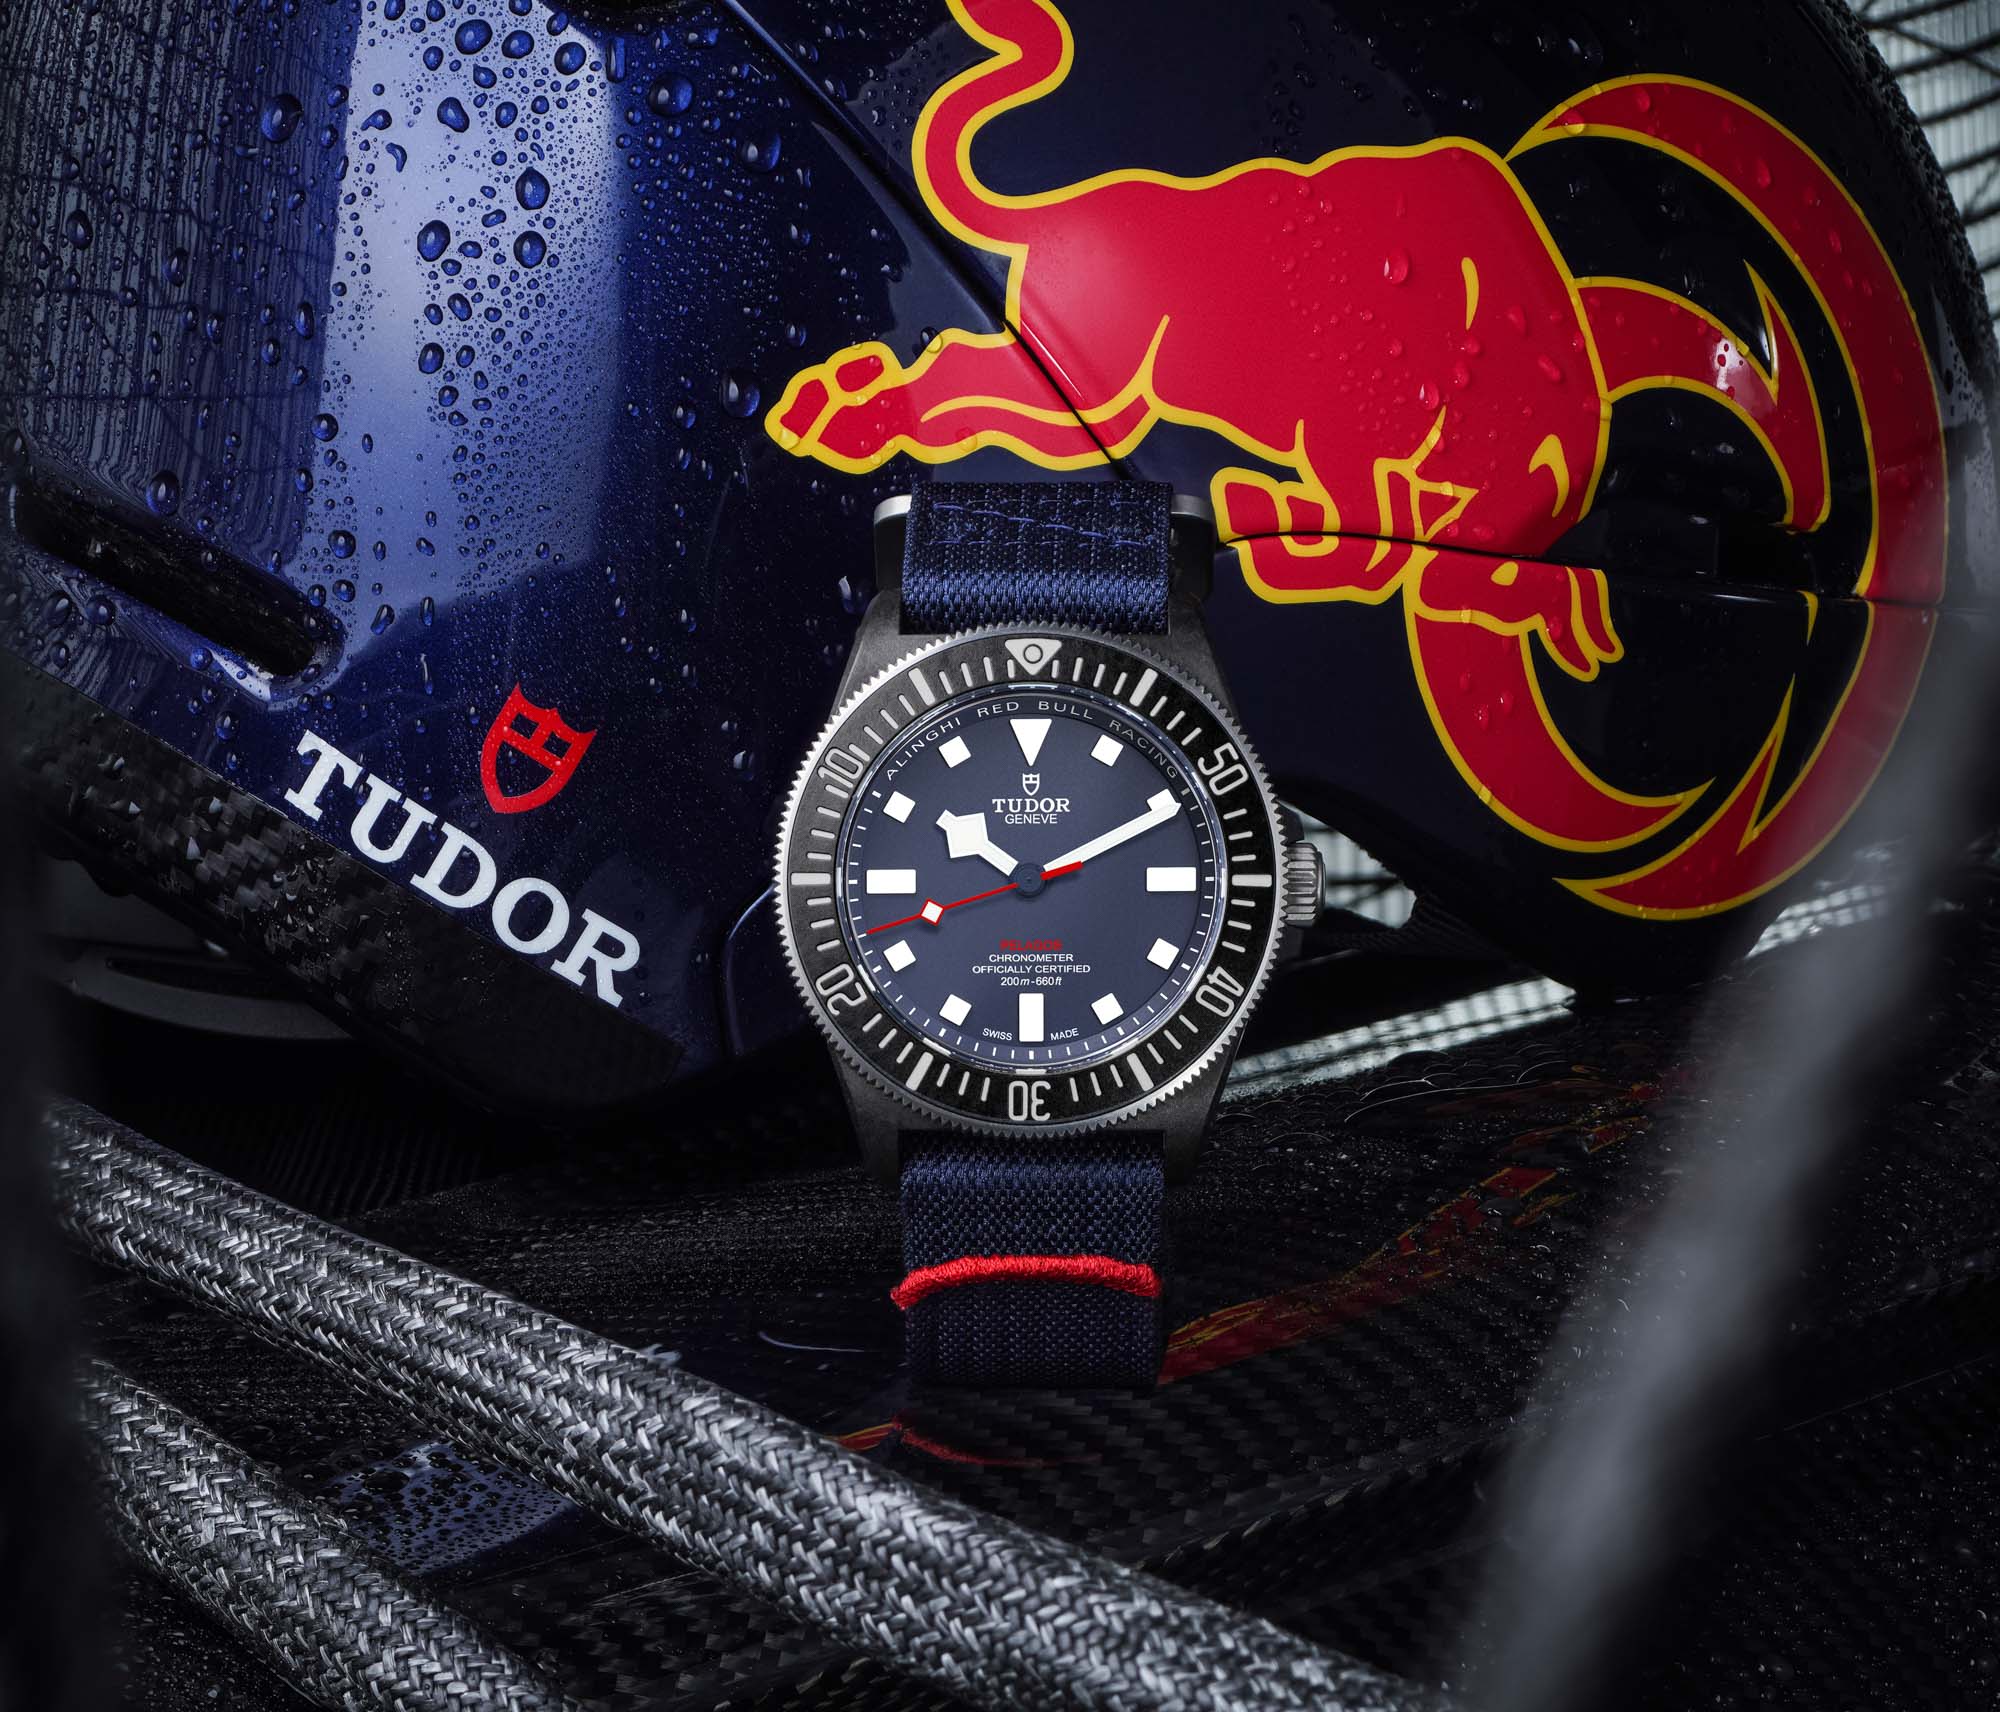 Tudor выпускает новый хронограф с часами Pelagos FXD Chrono Alinghi Red Bull Racing Edition